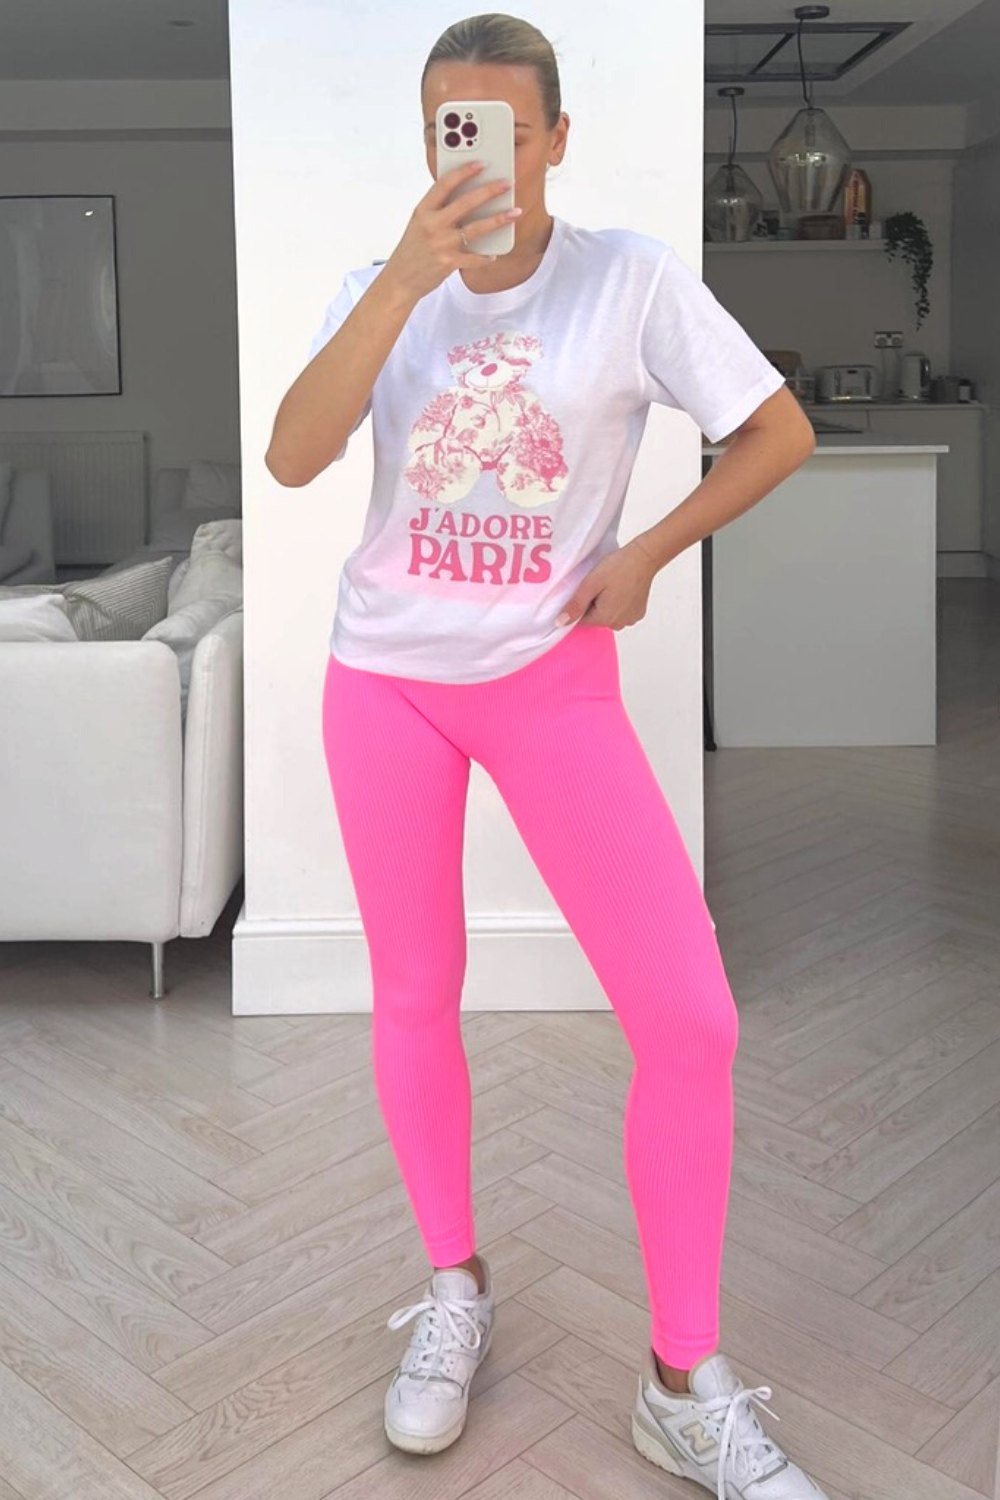 Jadore teddy pink printed tee & legging coord